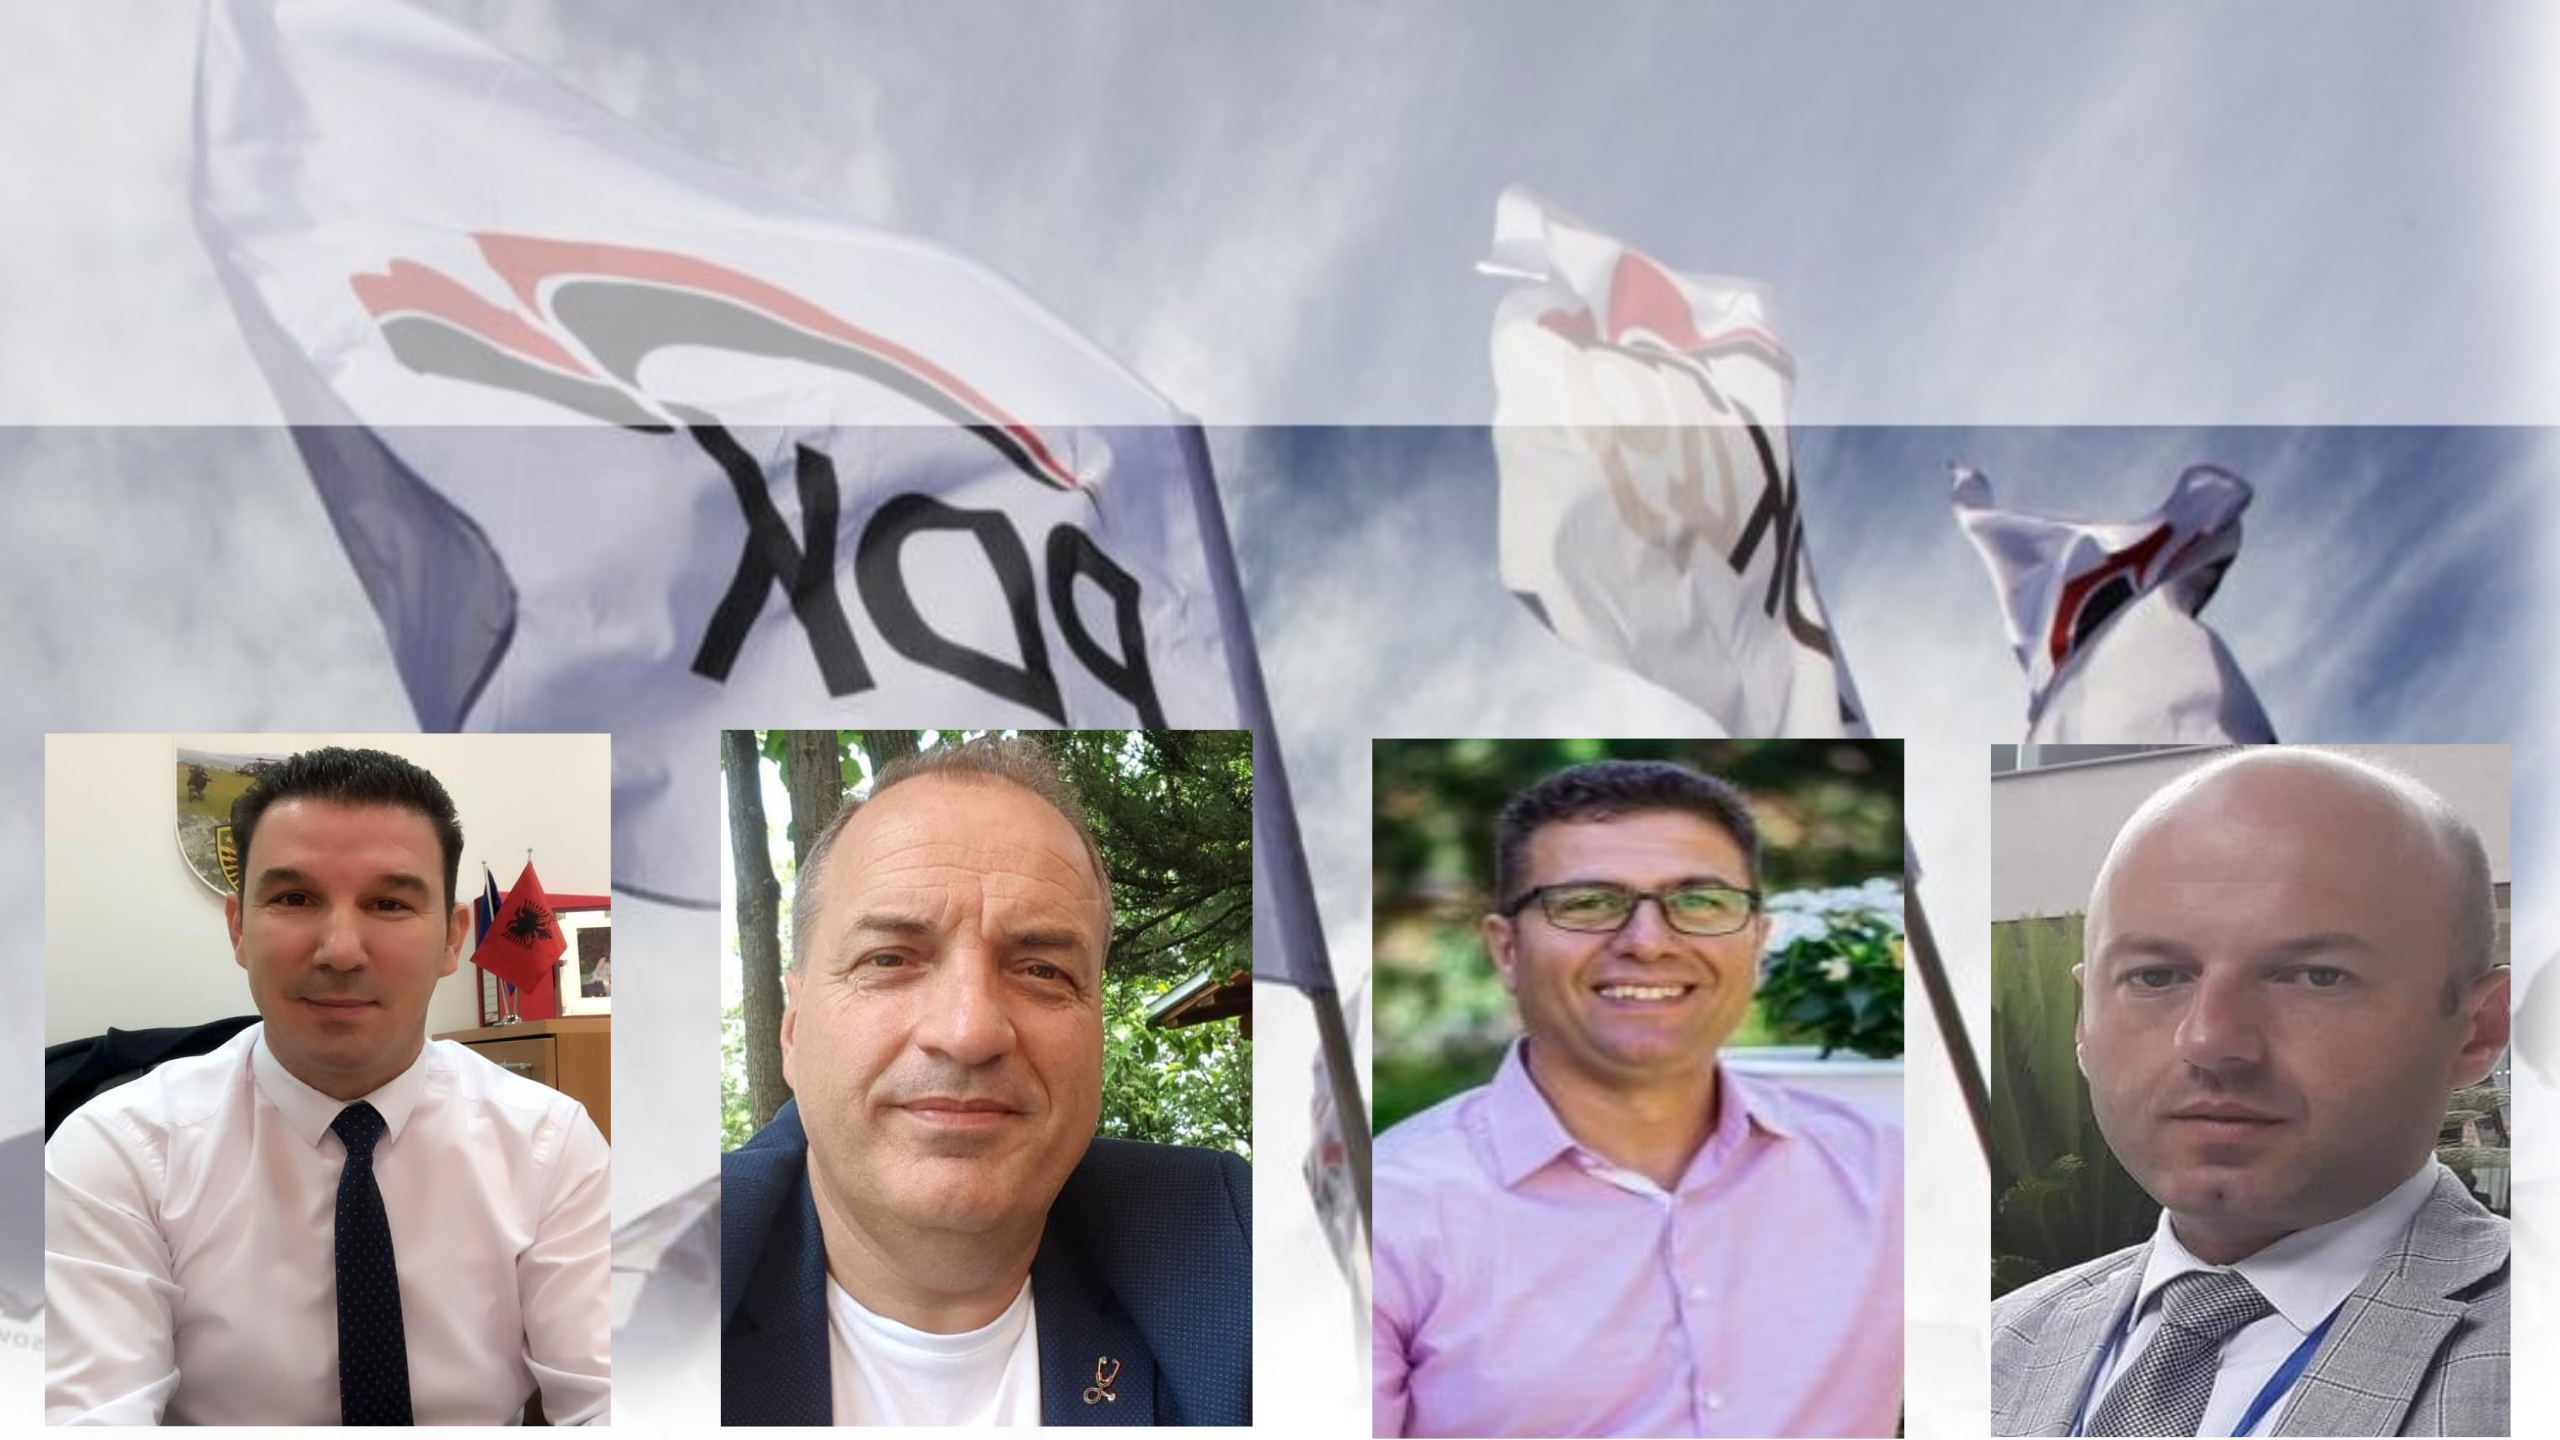 Katër kandidatët e mundshëm për kryetar të PDK-së në Lipjan